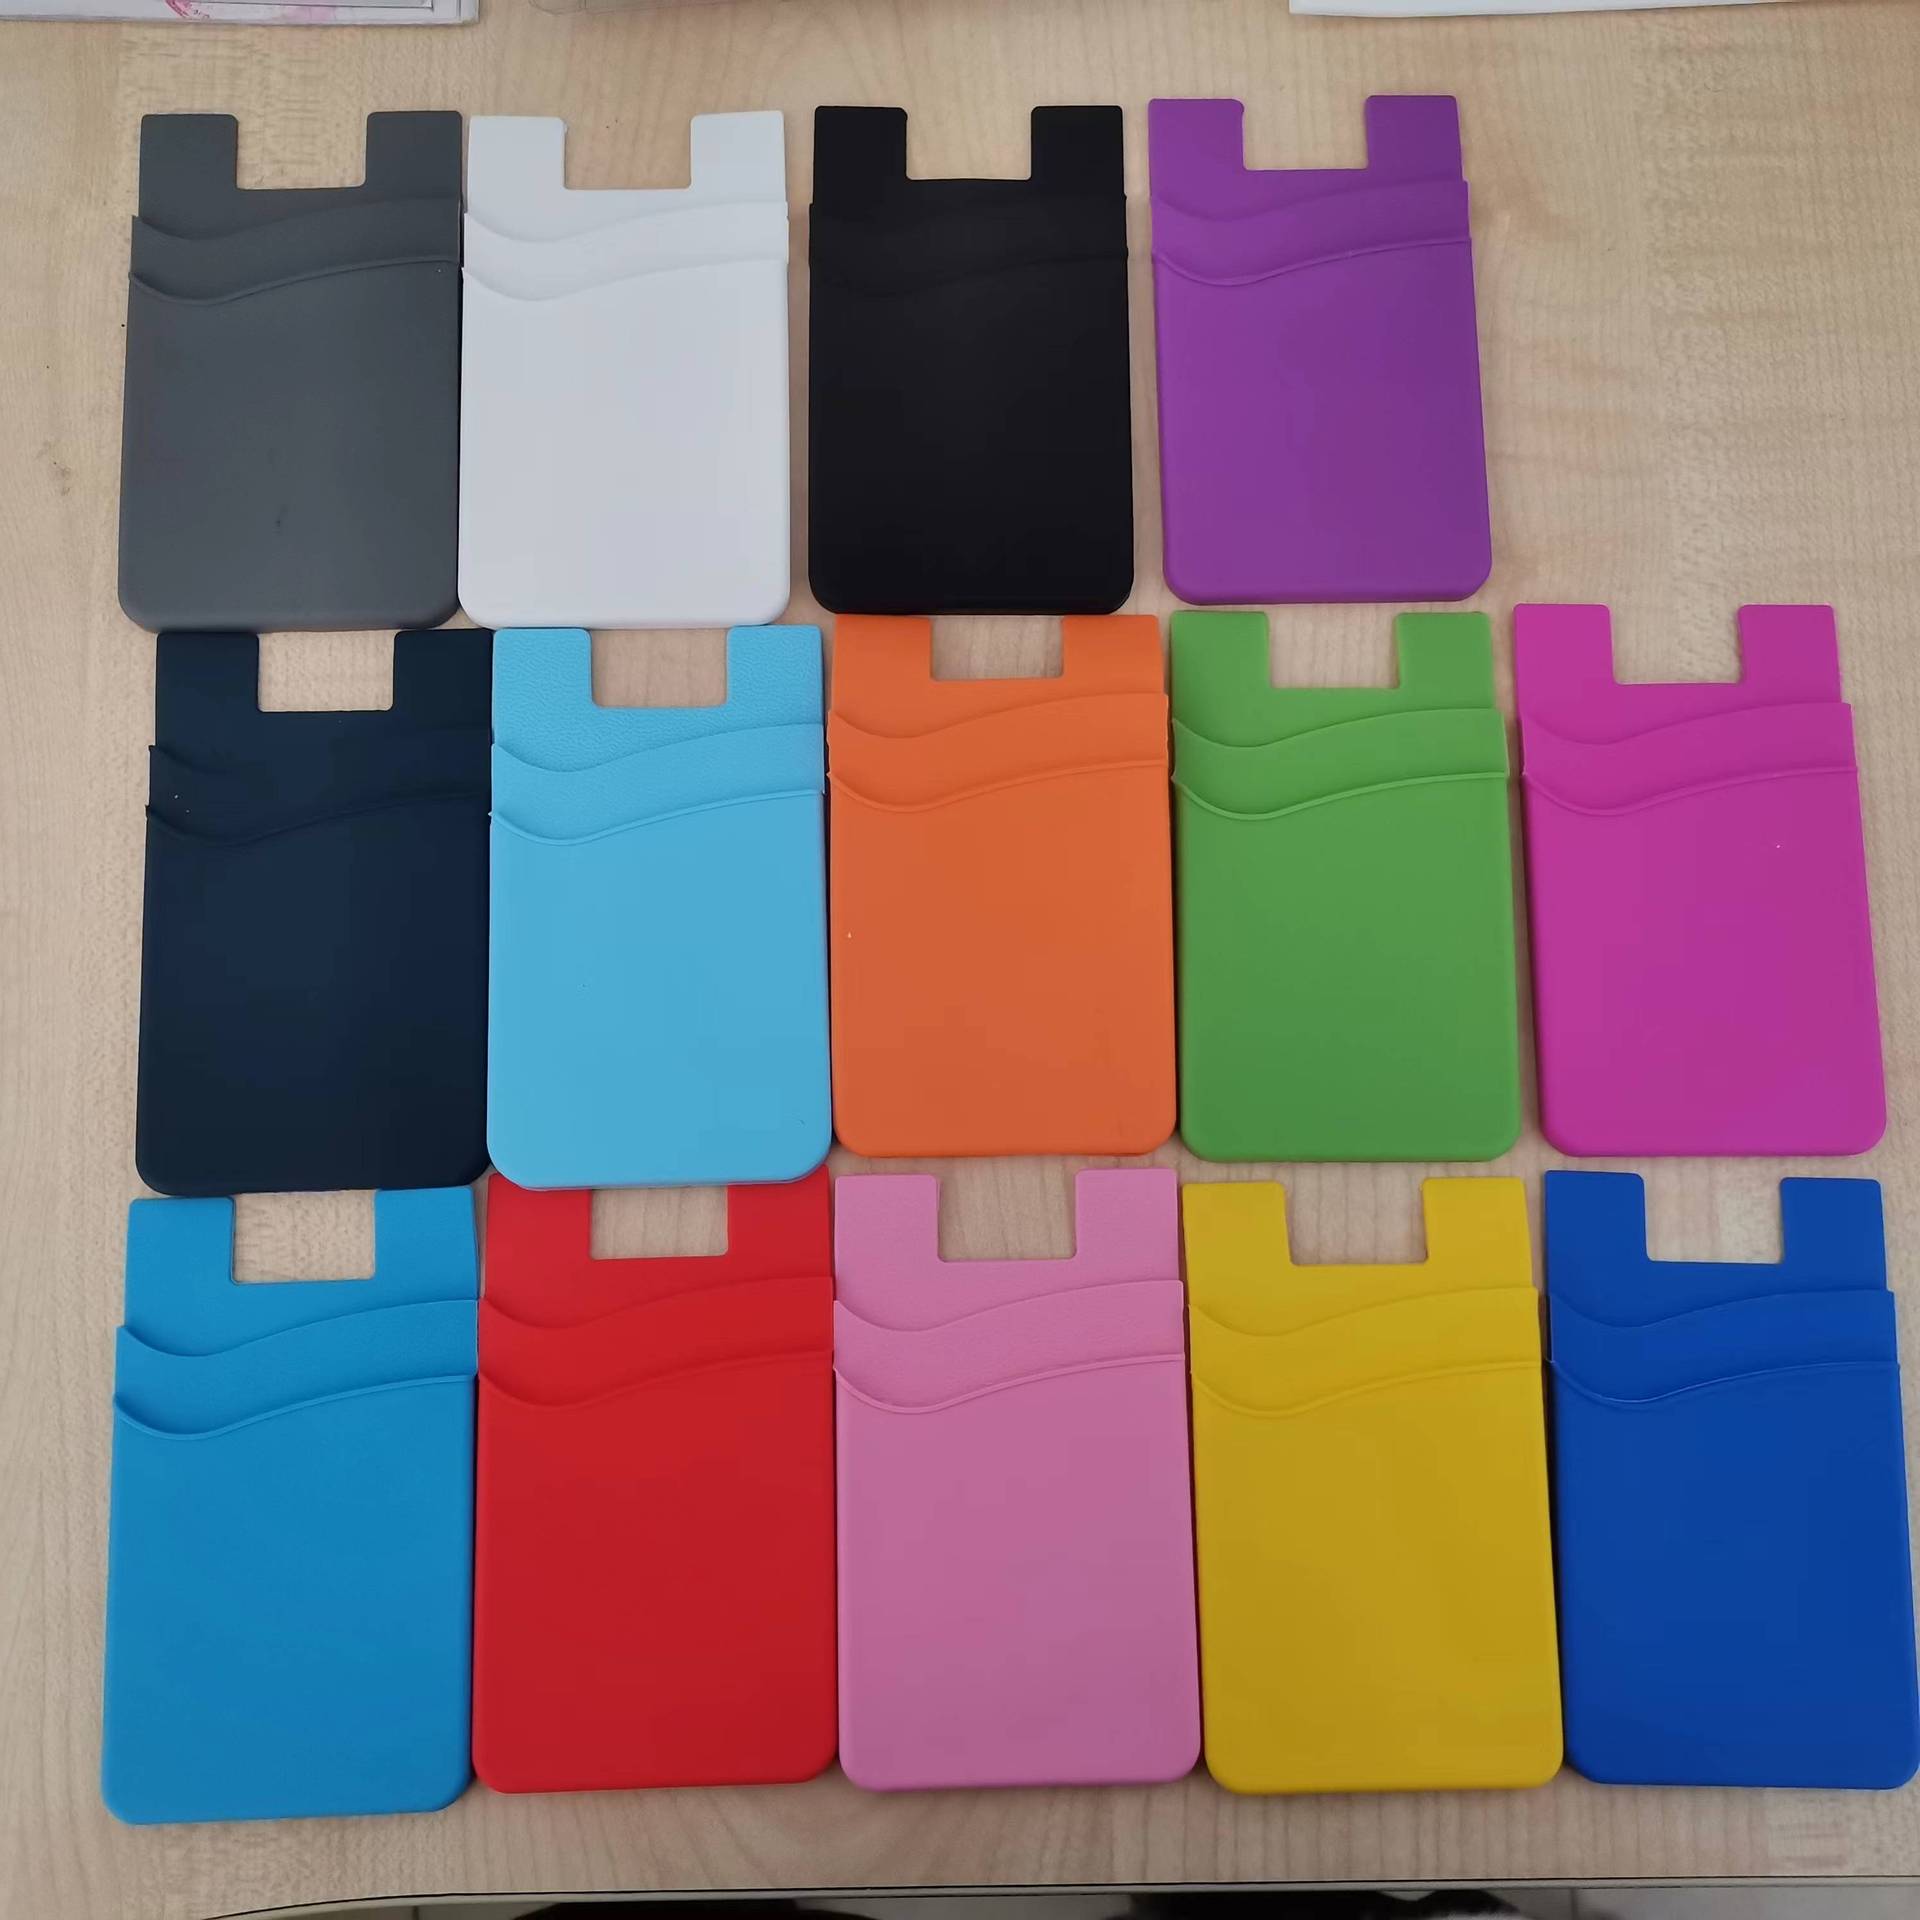 双层硅胶卡套贴 手机硅胶卡包 背胶背贴手机卡套可丝印UV彩印LOGO